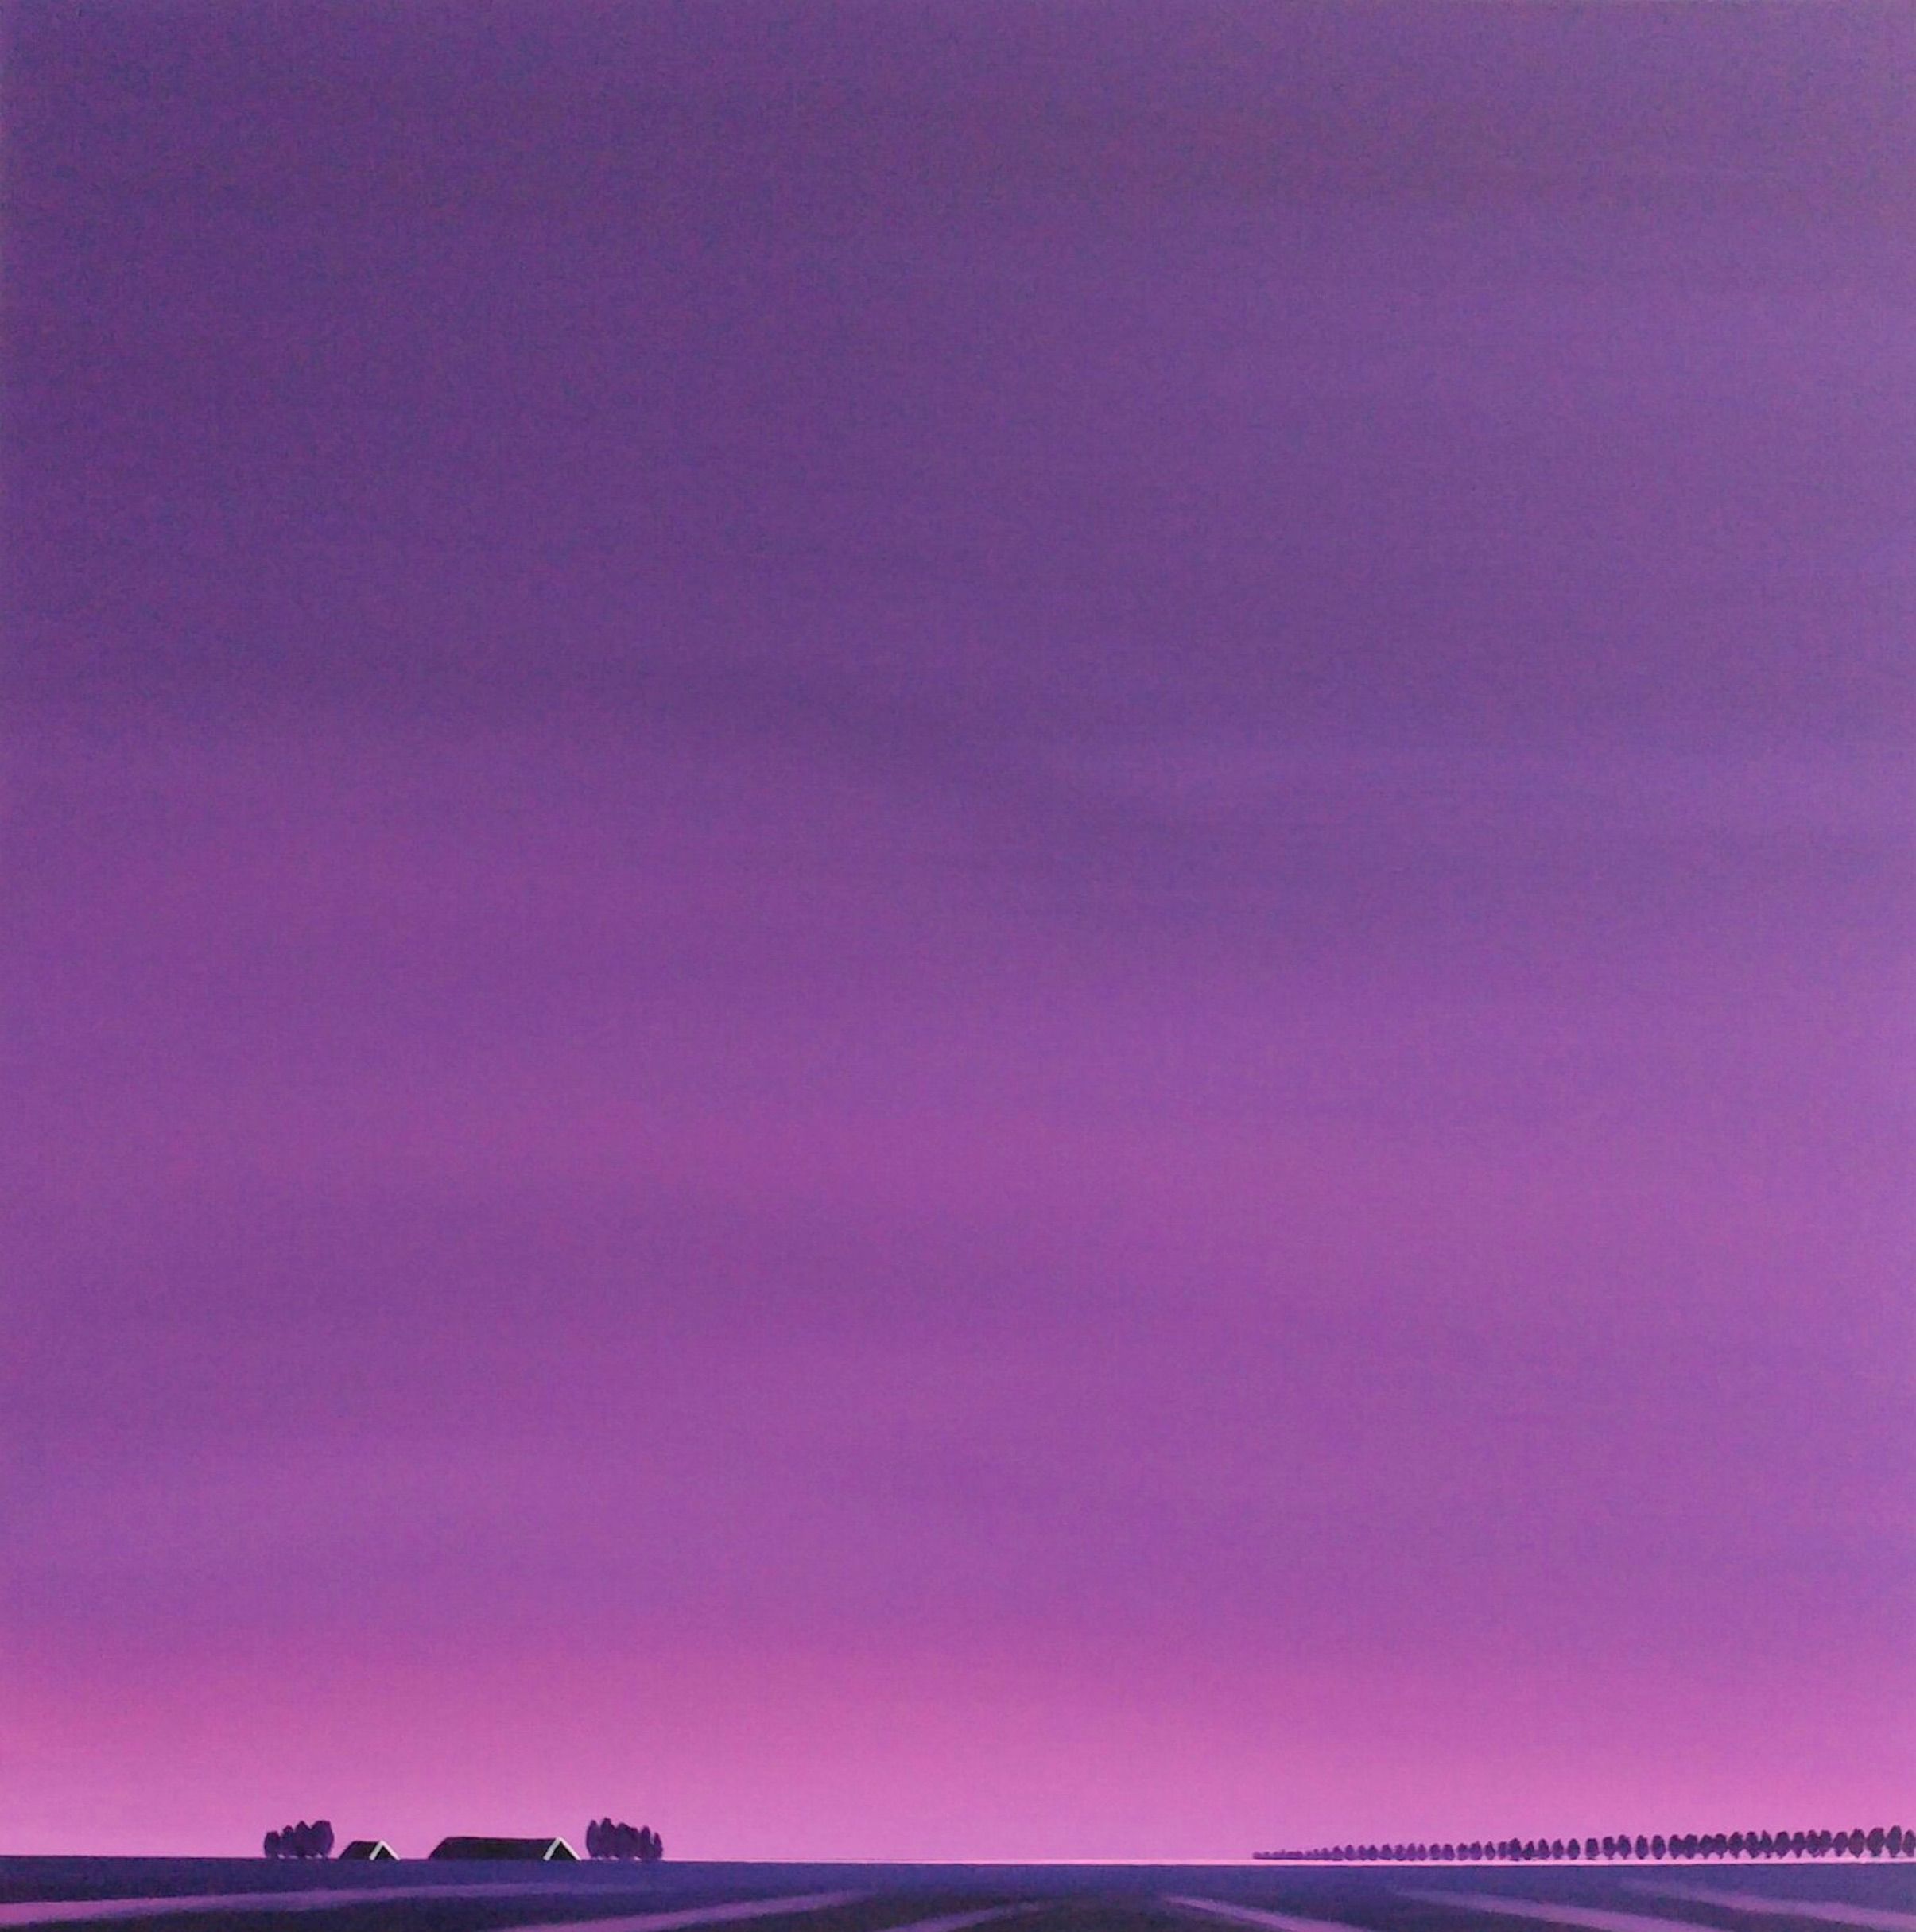 Il dipinto "Dageraad, addio alla notte" di Nelly van Nieuwenhuijzen mostra un paesaggio della Zelanda. Il cielo viola, l'alba rosata che si riflette sulle tracce del terreno e sui tetti scuri, è intenso, quasi travolgente.